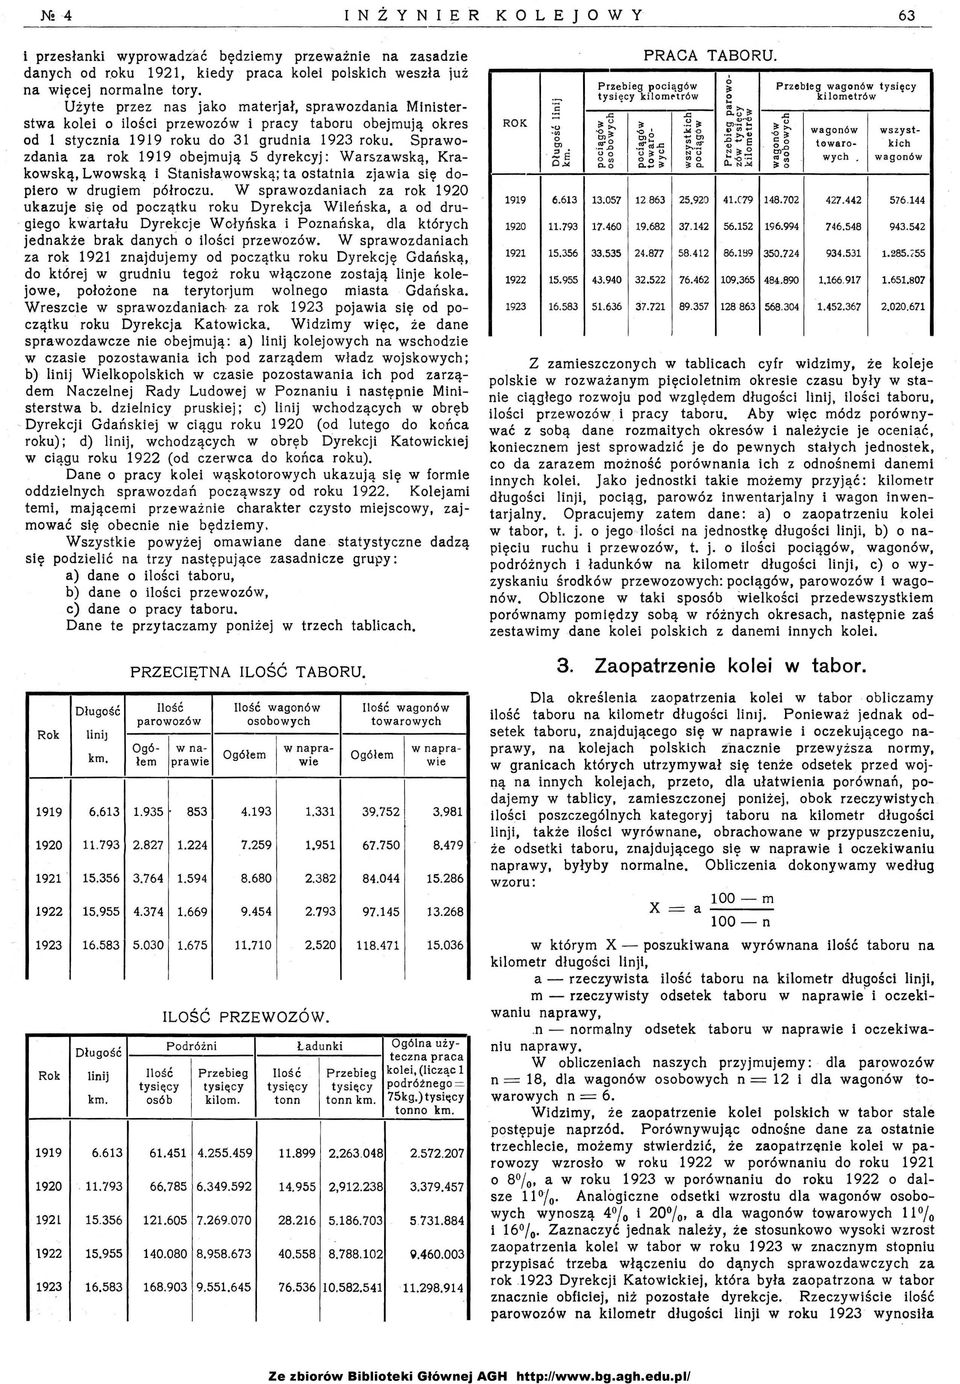 Sprawozdania za rok 1919 obejmują 5 dyrekcyj: Wan;zawską, Krakowską, Lwowską i Stanisławowską; ta ostatnia zjawia się dopiero w drugiem półroczu.